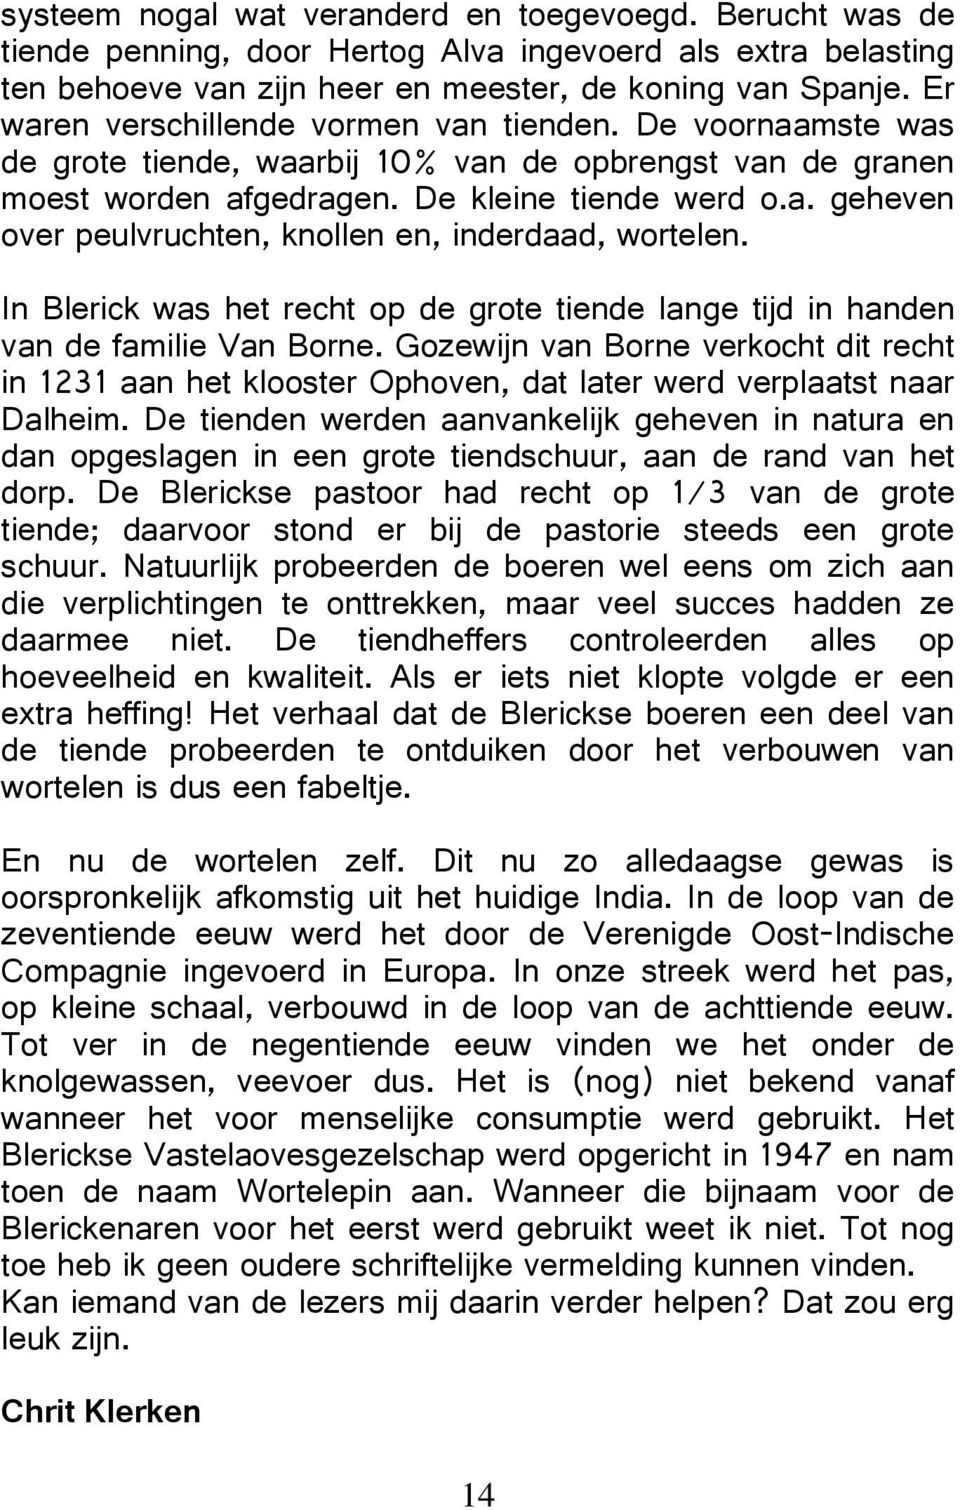 In Blerick was het recht op de grote tiende lange tijd in handen van de familie Van Borne Gozewijn van Borne verkocht dit recht in aan het klooster Ophoven dat later werd verplaatst naar Dalheim De